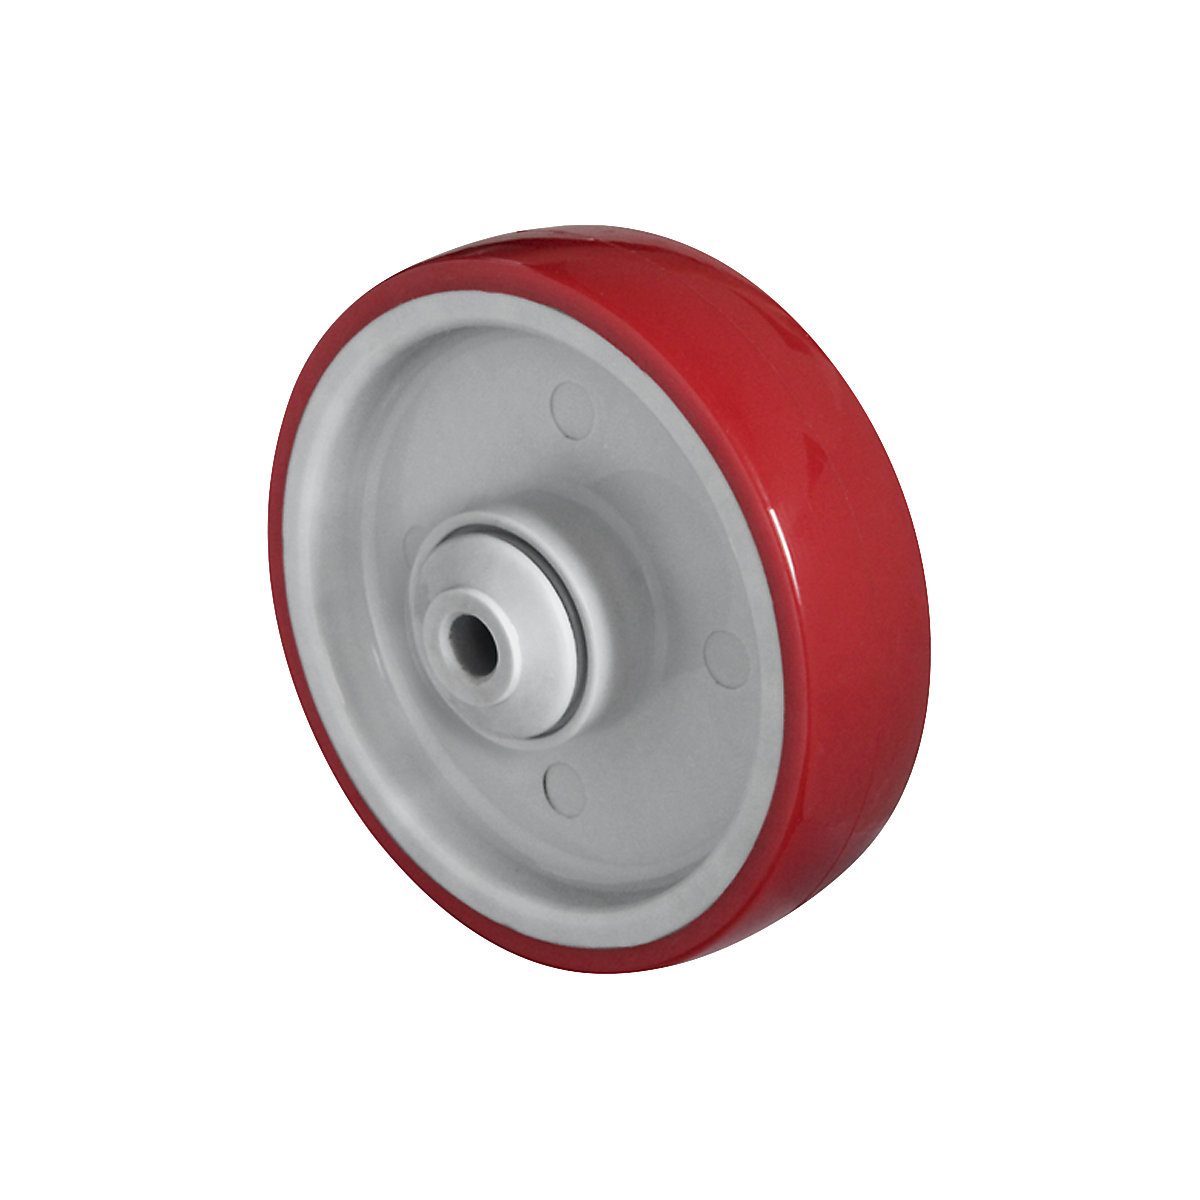 Roue en PU rouge sur jante en polyamide, roulement à billes, à partir de 2 pièces, Ø x largeur roue 160 x 46 mm-1